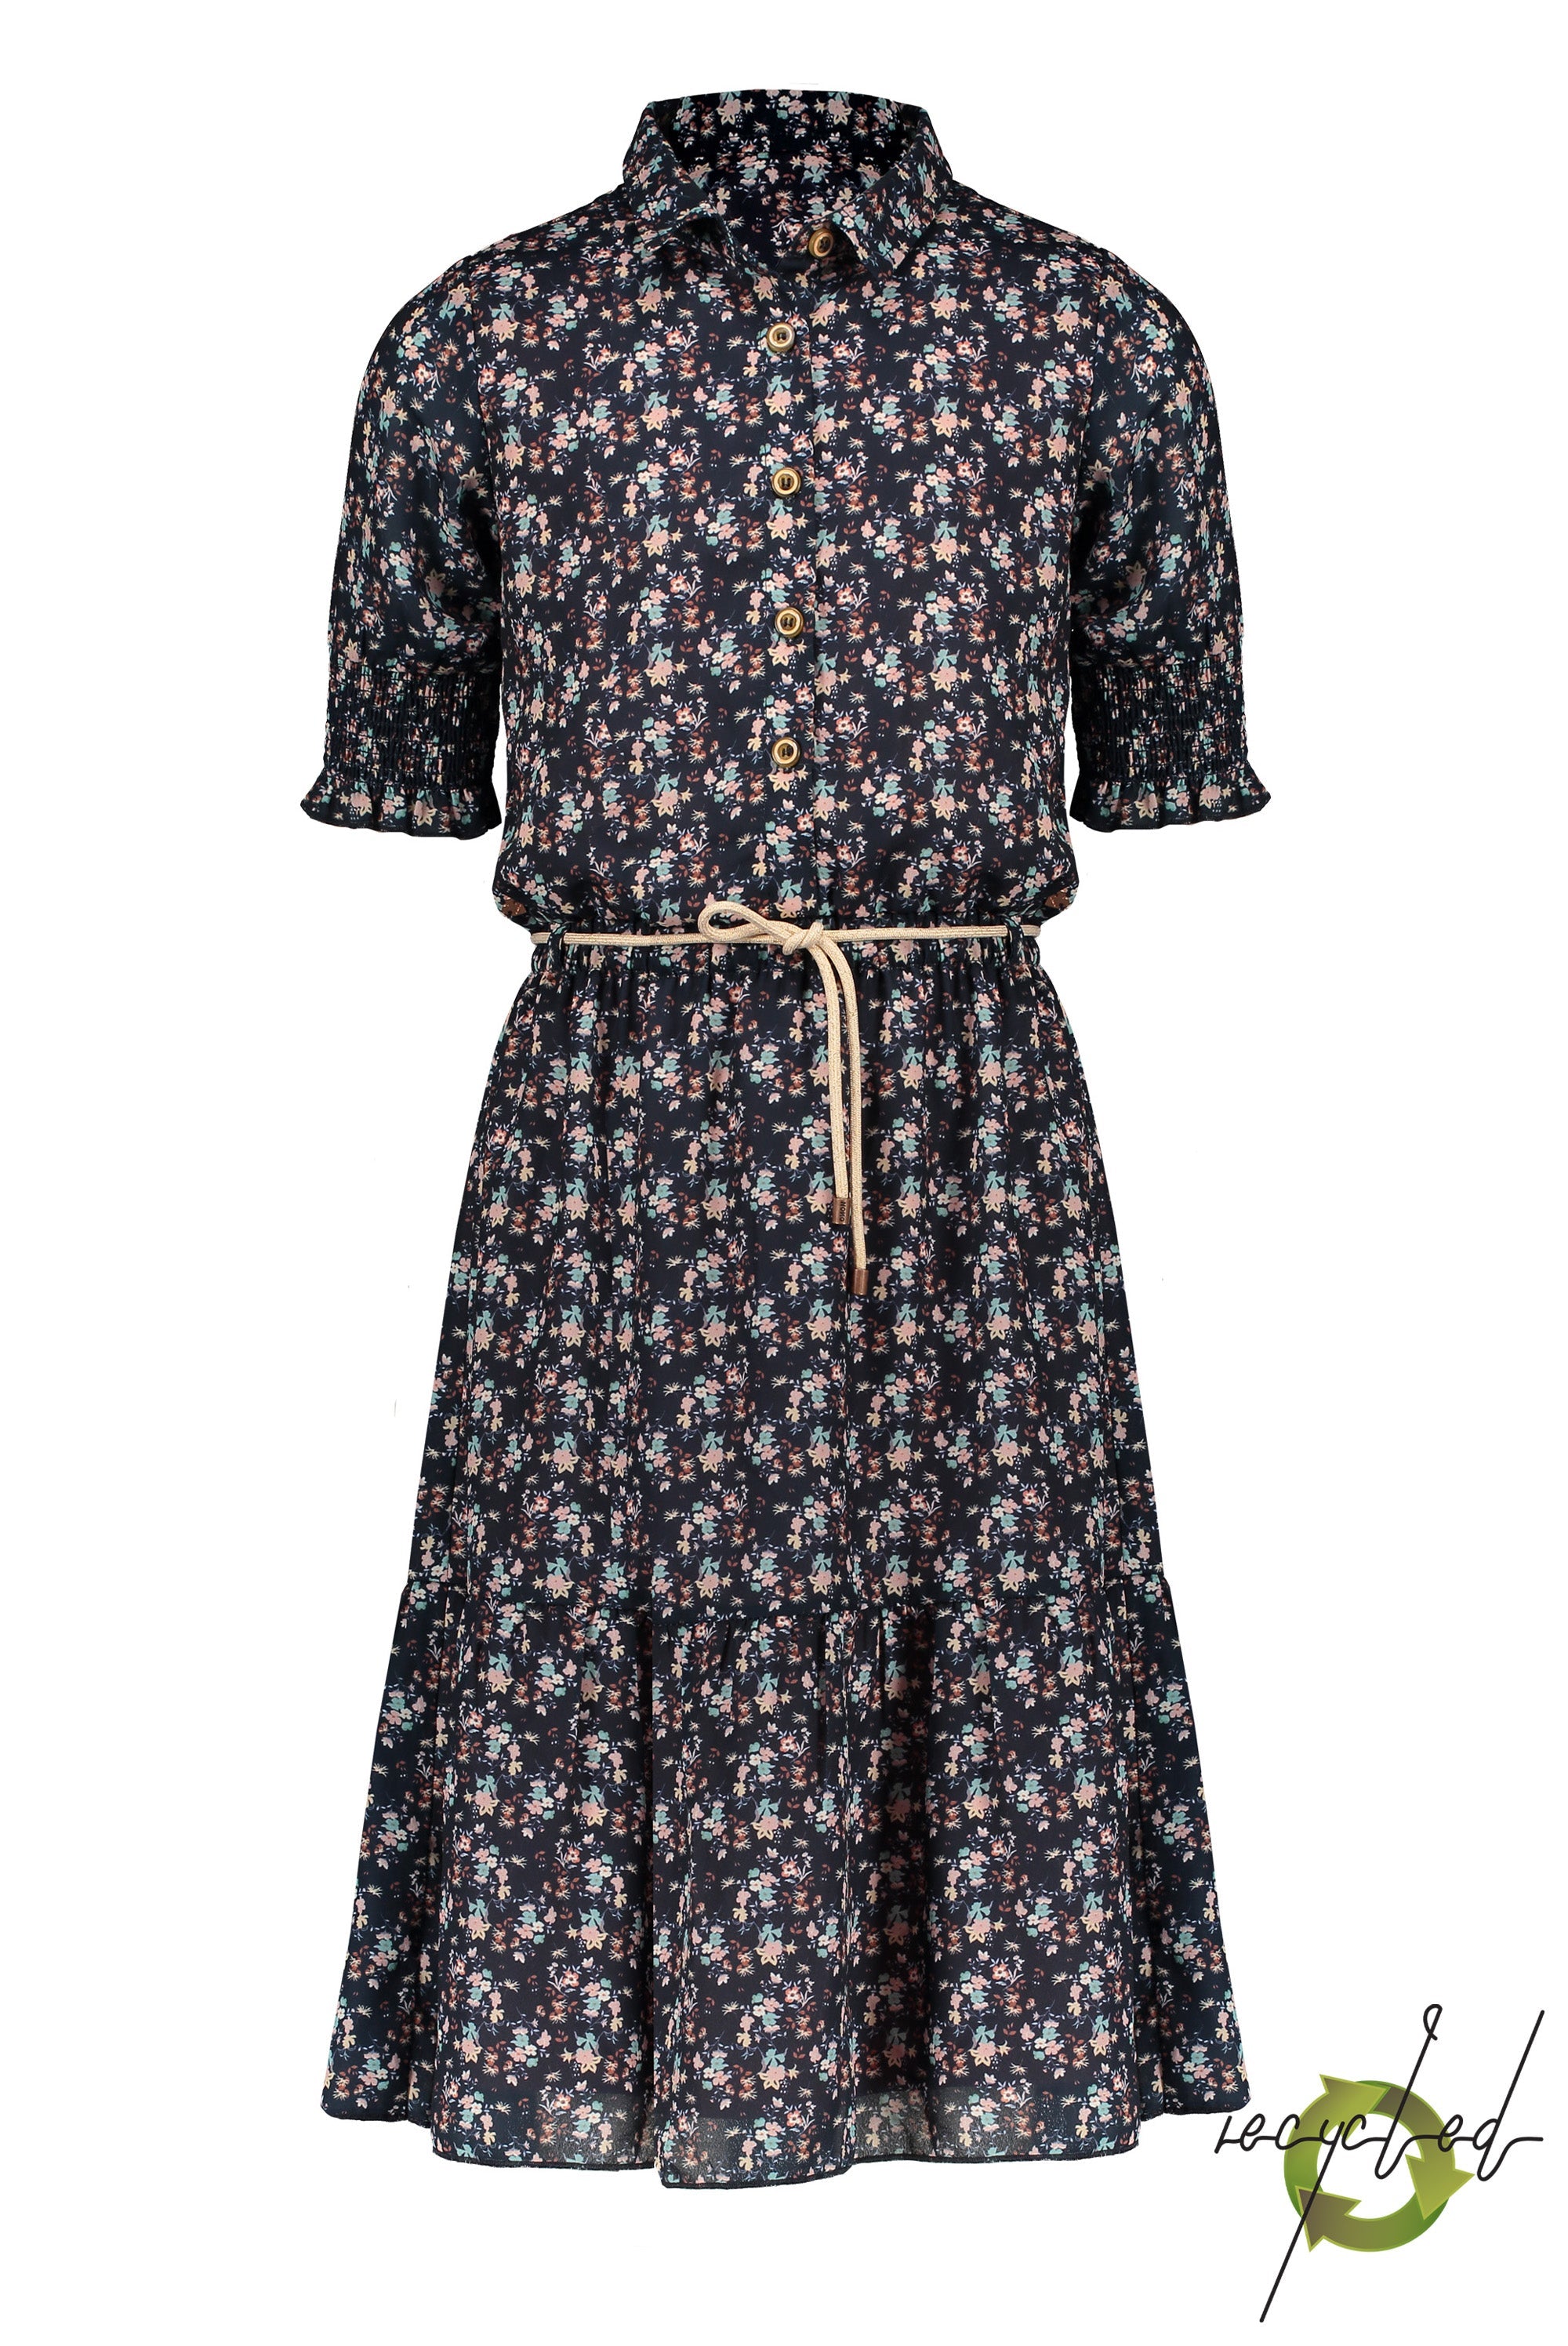 Meisjes Miron long woven dress 1/2sl with smocked sleeve ends van NoNo in de kleur Navy Blazer in maat 146/152.